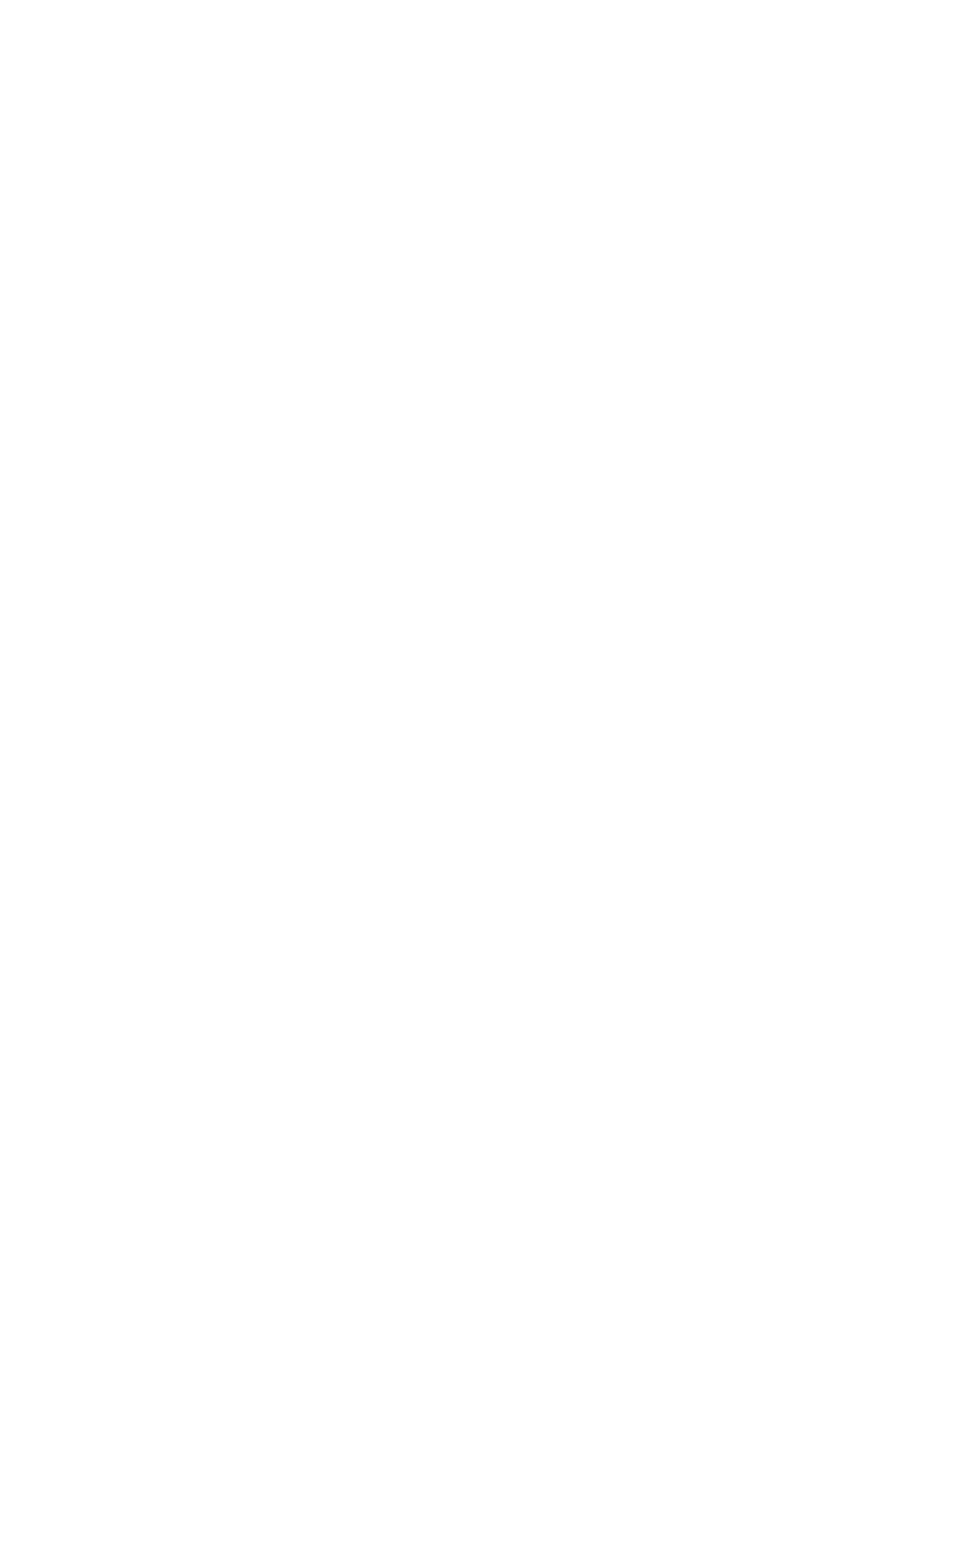 Finance House logo for dark backgrounds (transparent PNG)